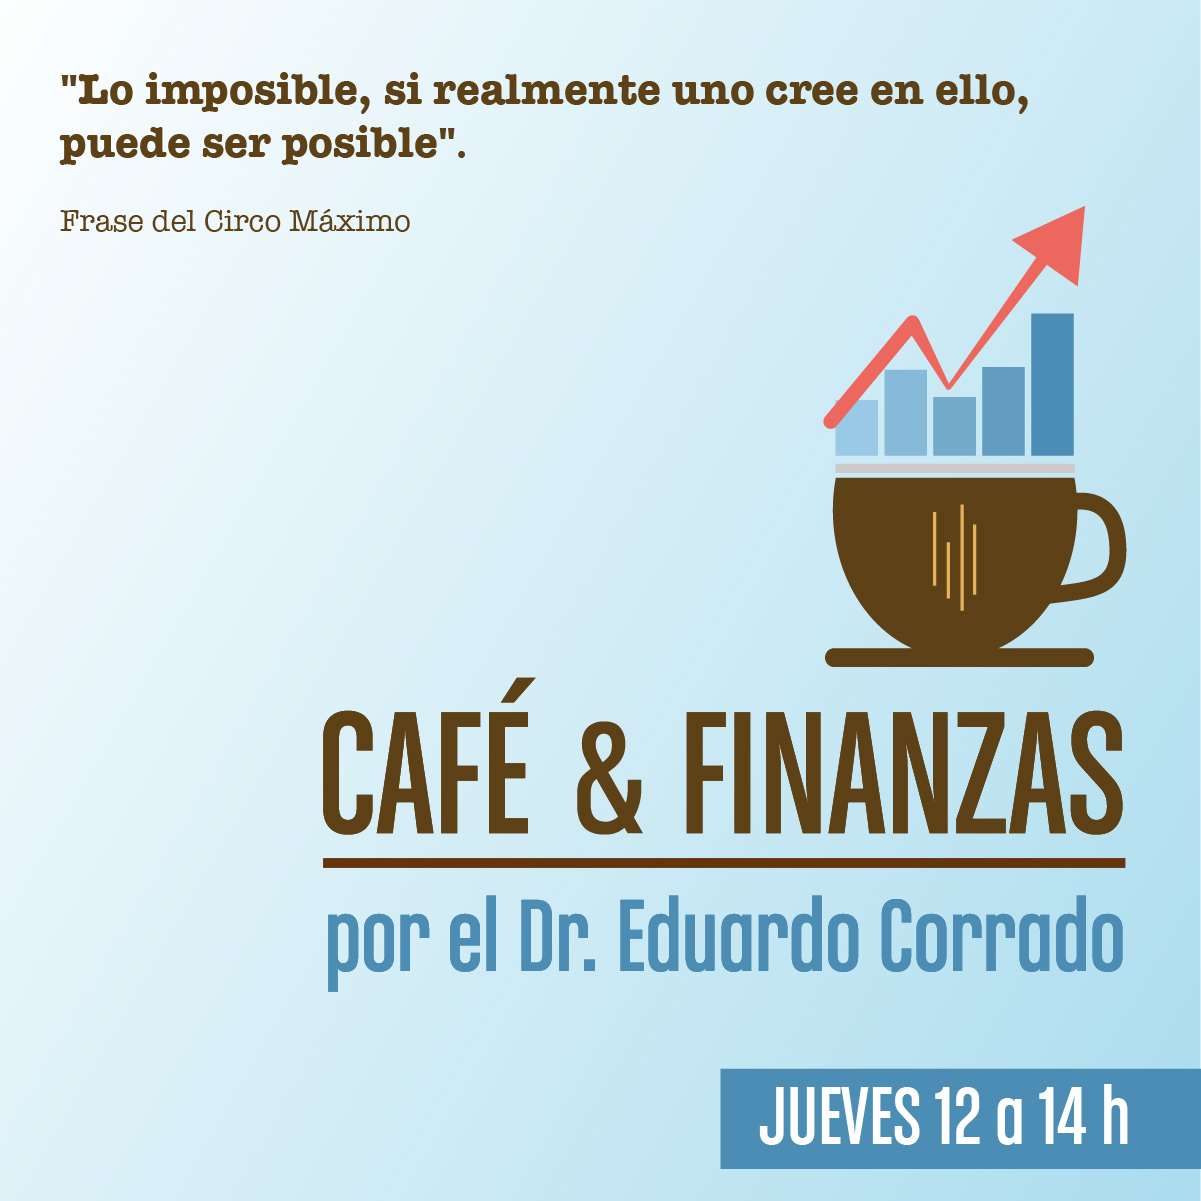 #Podcast Café & Finanzas 24.05: @Reddenegocios_ @aquisebas @Omarlopezmato @Deliarf @GemaEmpresarias